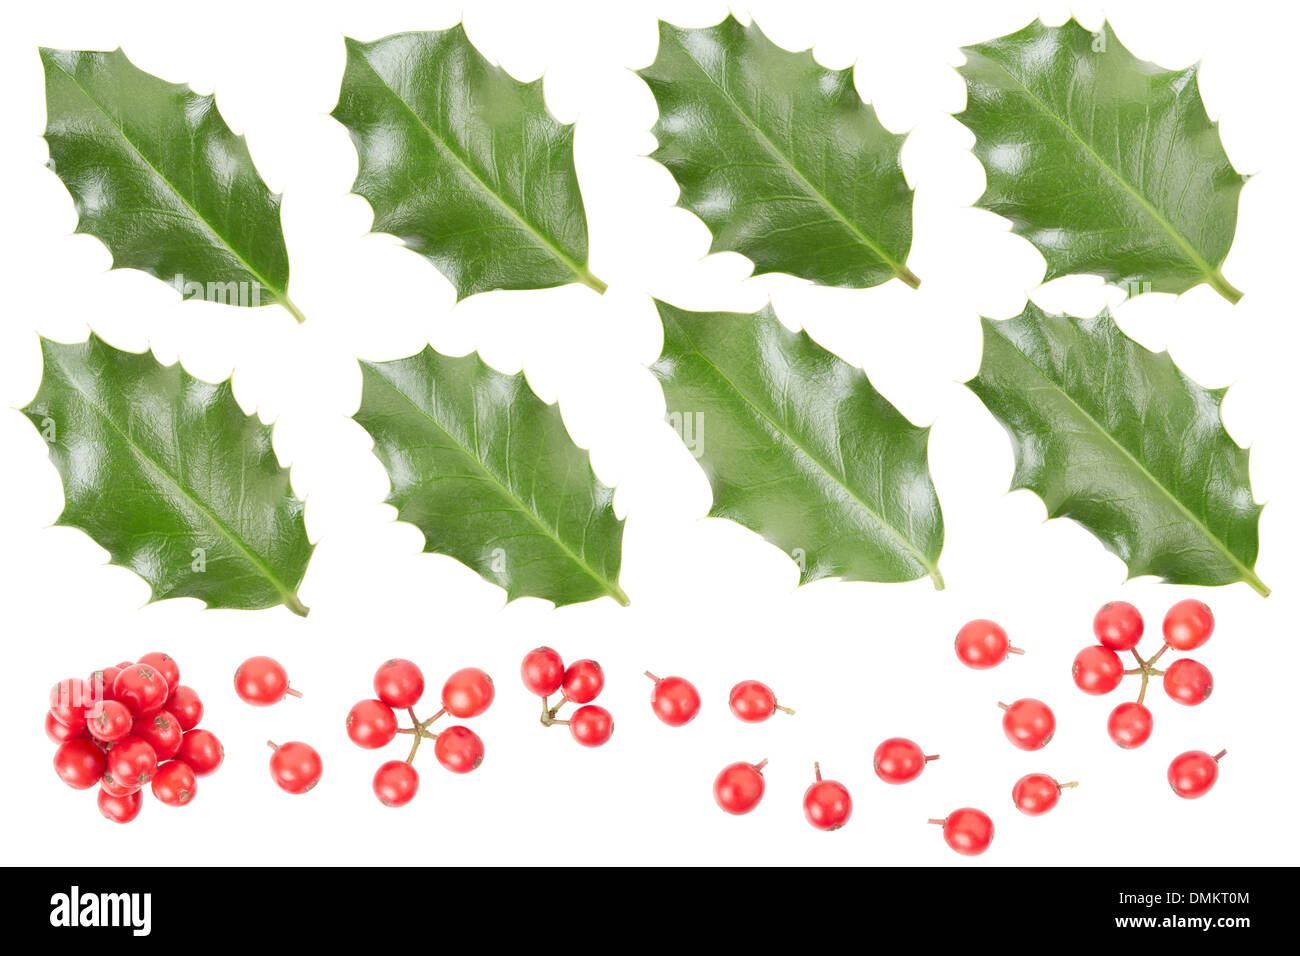 Holly Blätter und Beeren Sammlung isoliert auf weiss, Clipping-Pfad enthalten Stockfoto